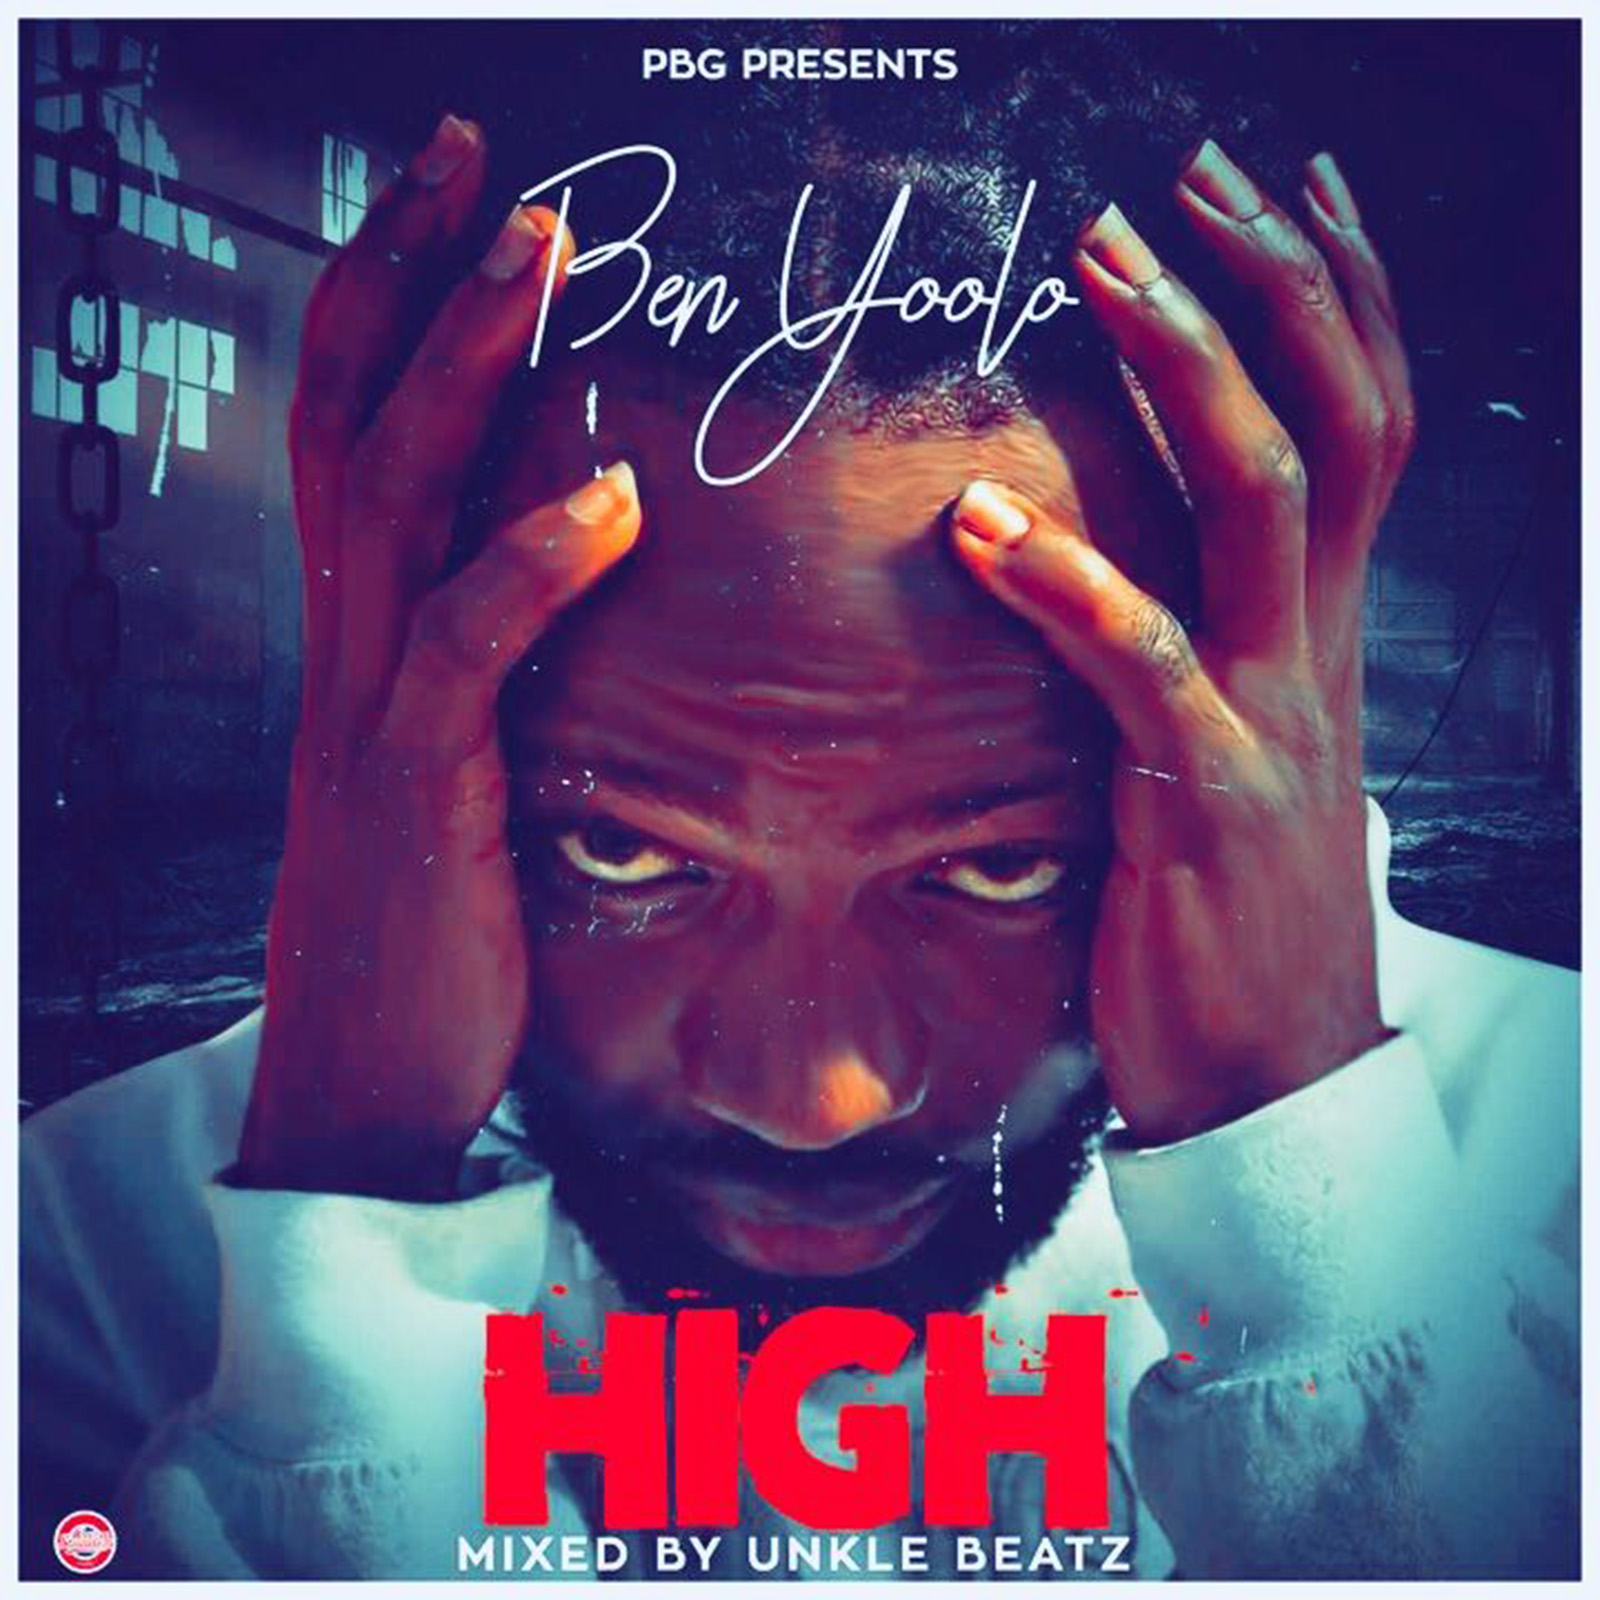 High by Ben Yoolo